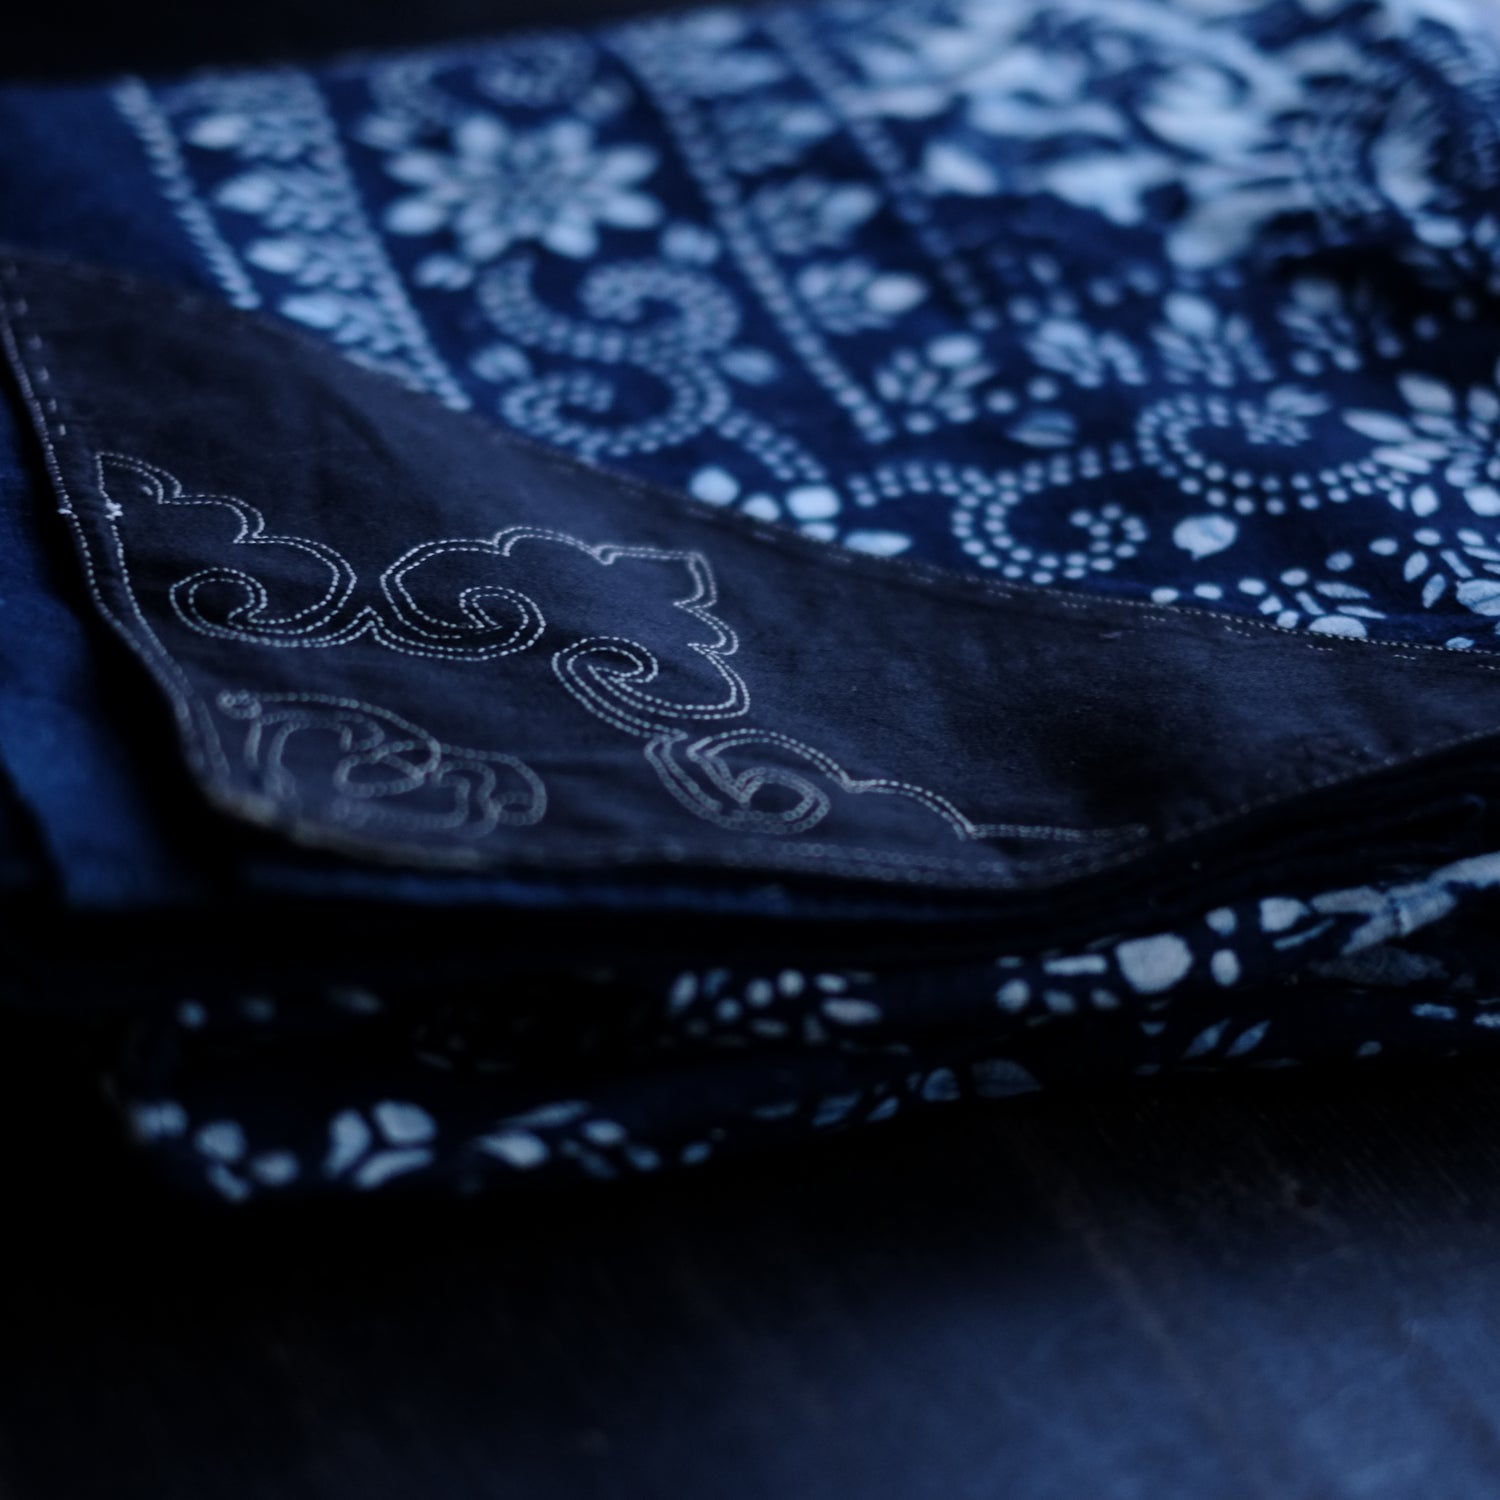 時代 藍印花布 3巾 中国 古布(19-20世紀) – 逢季荘